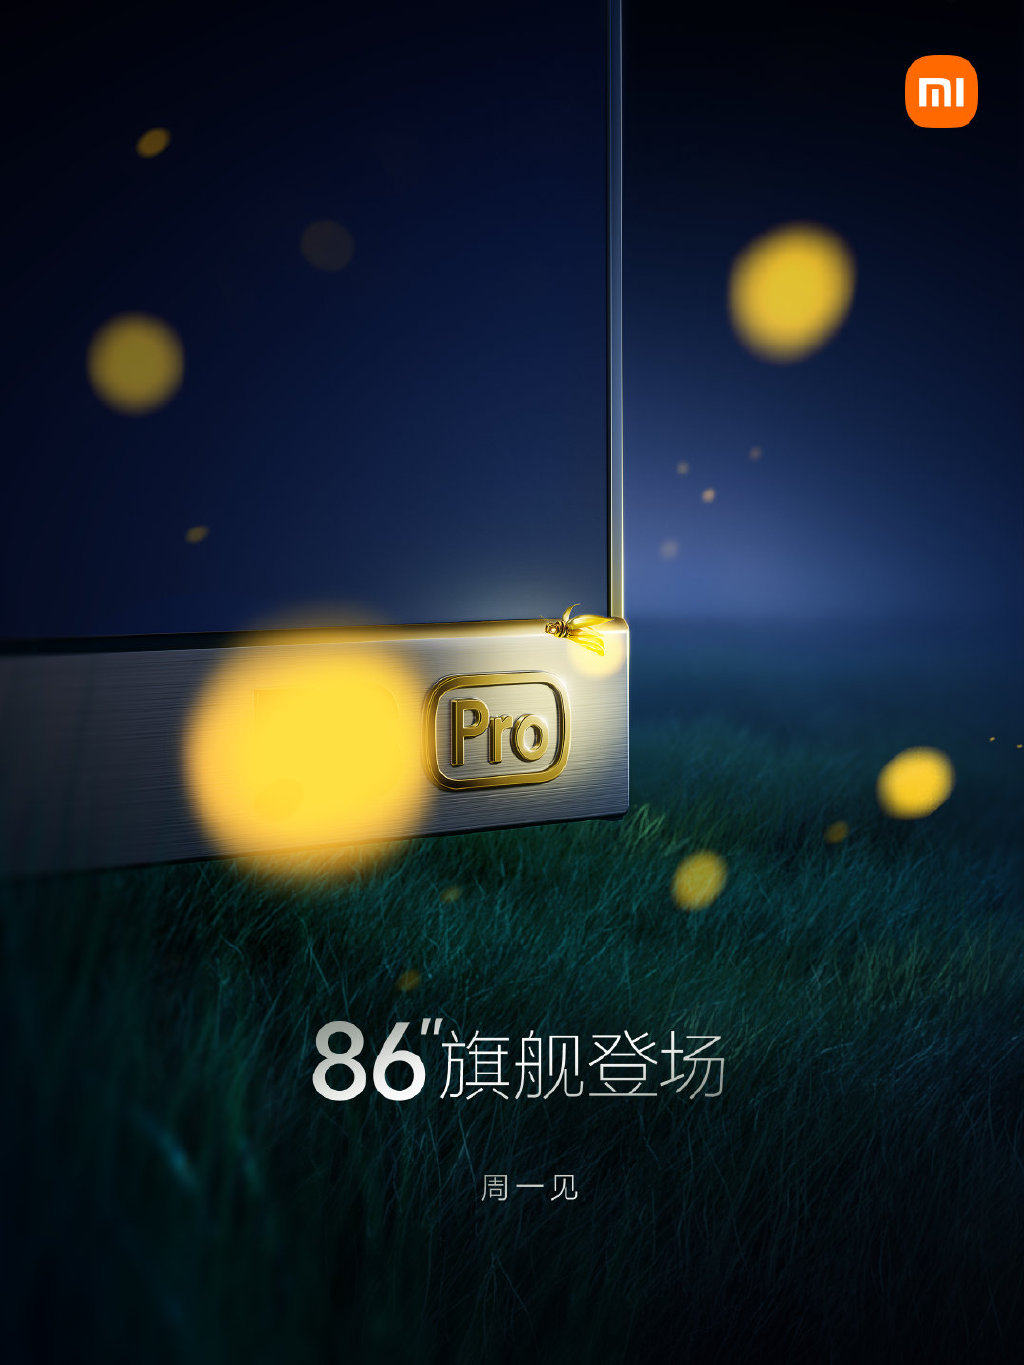 小米电视86英寸新品将于5月23日发布 疑为小米电视ES Pro